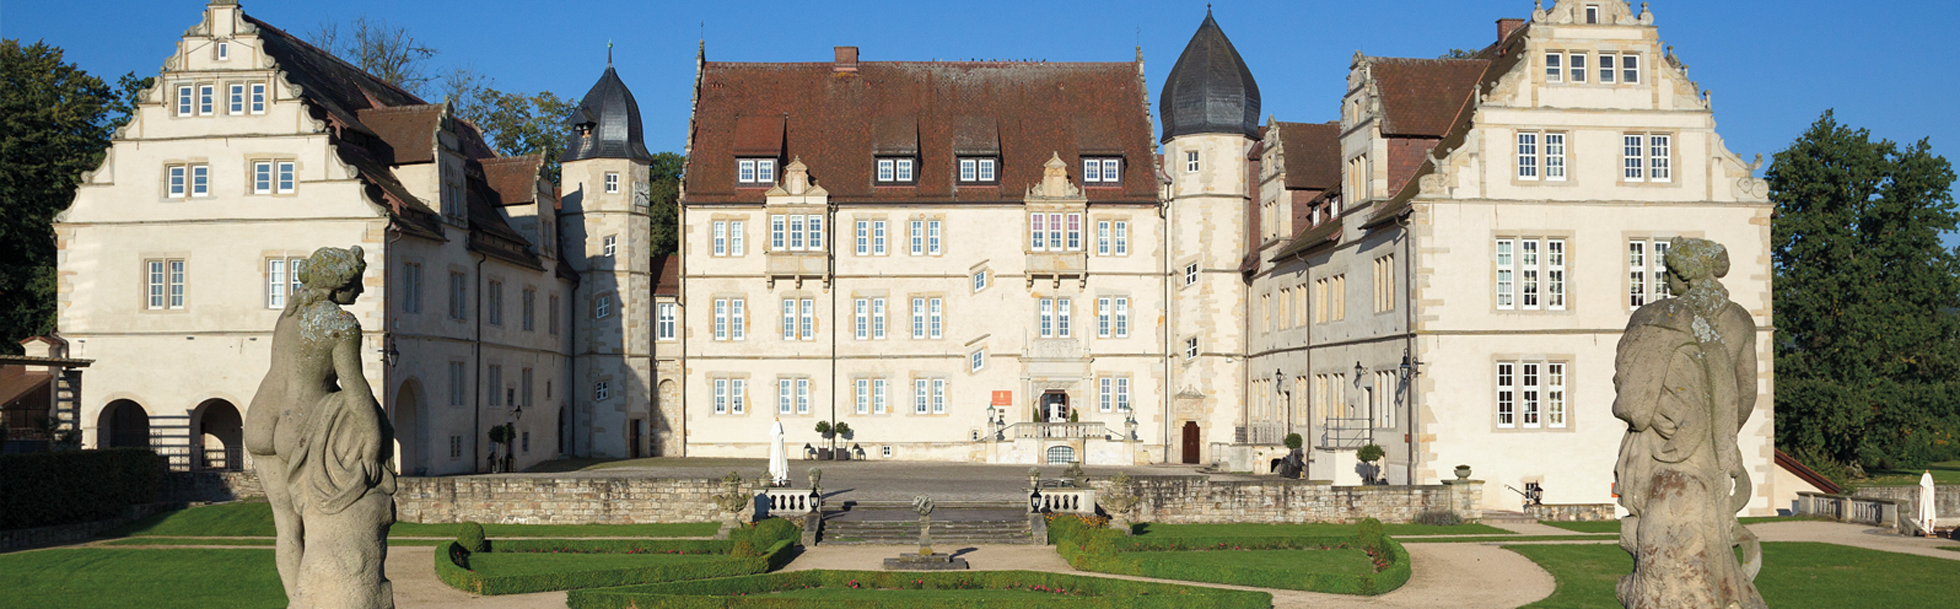 SchlosshotelMuenchhausen_12